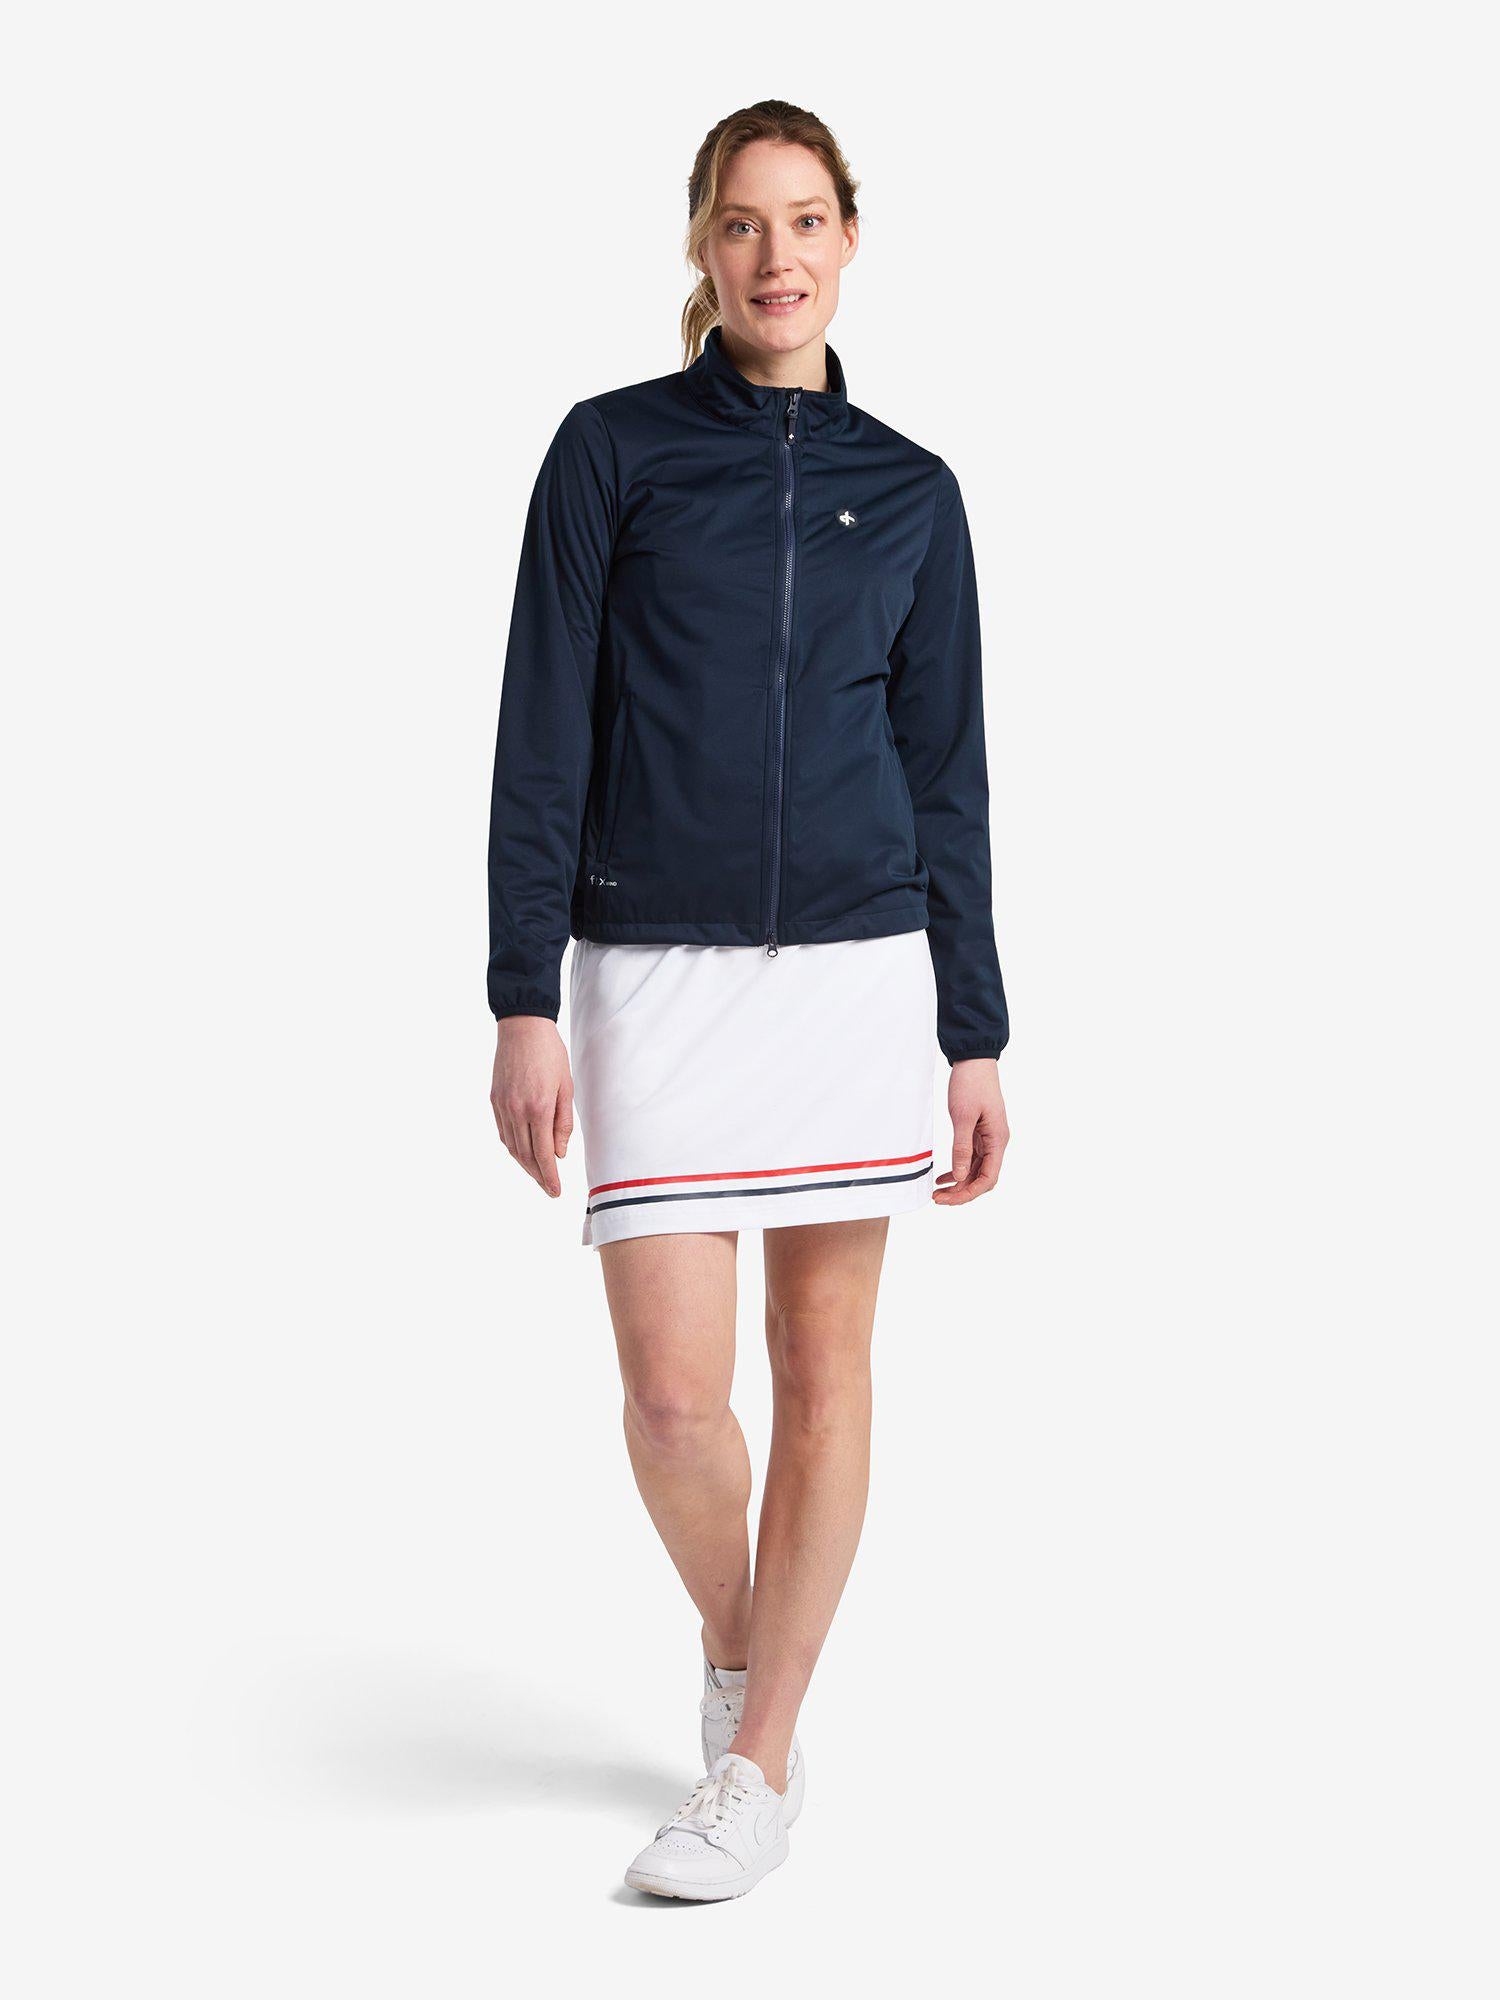 Womenswear/Jackets – Cross Sportswear Intl